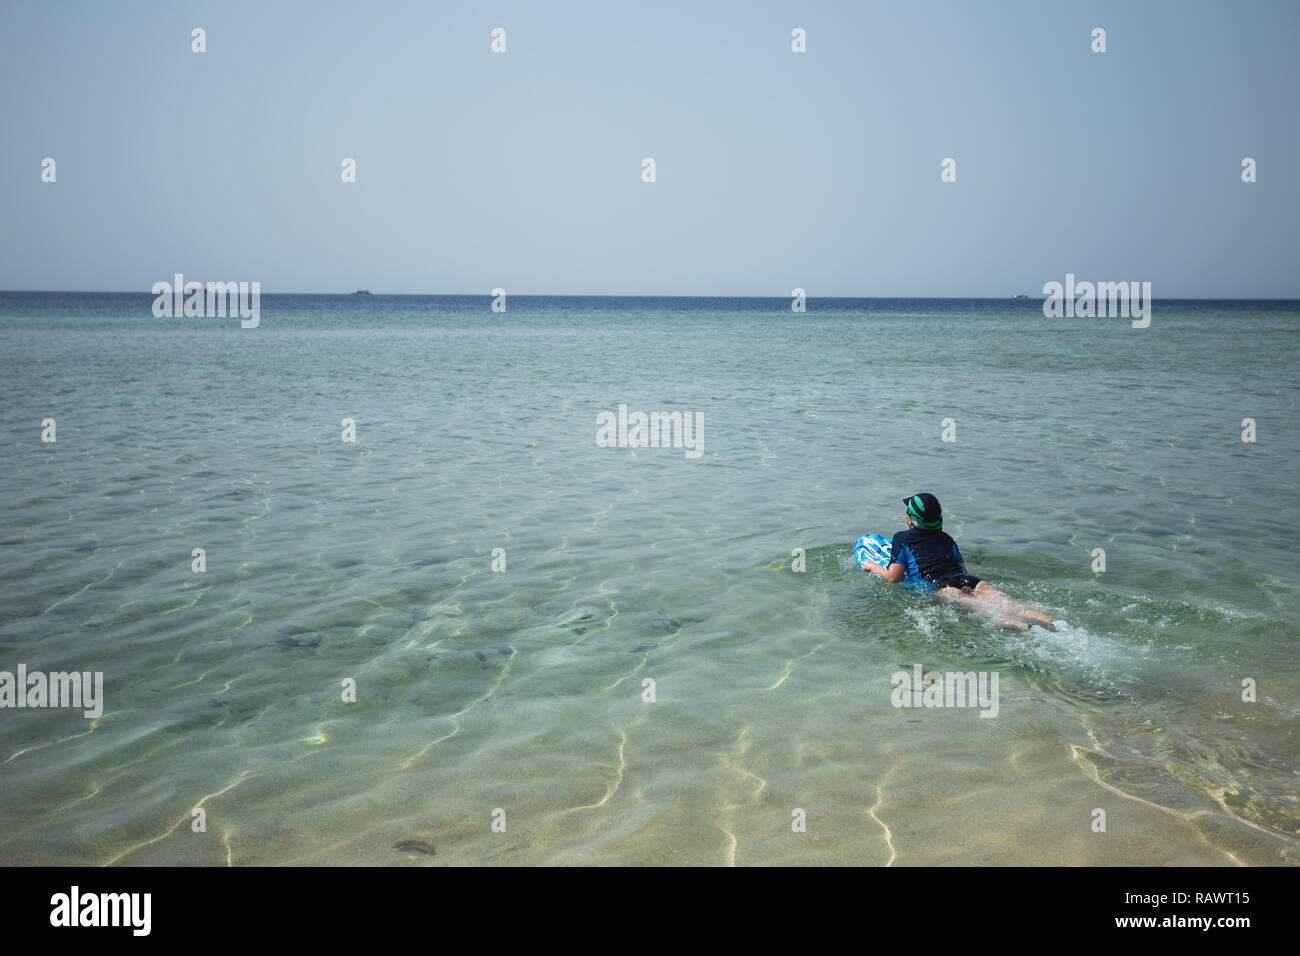 Süße weiß gegerbt Kid im Badeanzug, Kappe und Aqua schuhe Spaß am Sommer, der Sandstrand mit Blau aufblasbares Surfboard gekleidet. Horizontale Farbe phot Stockfoto